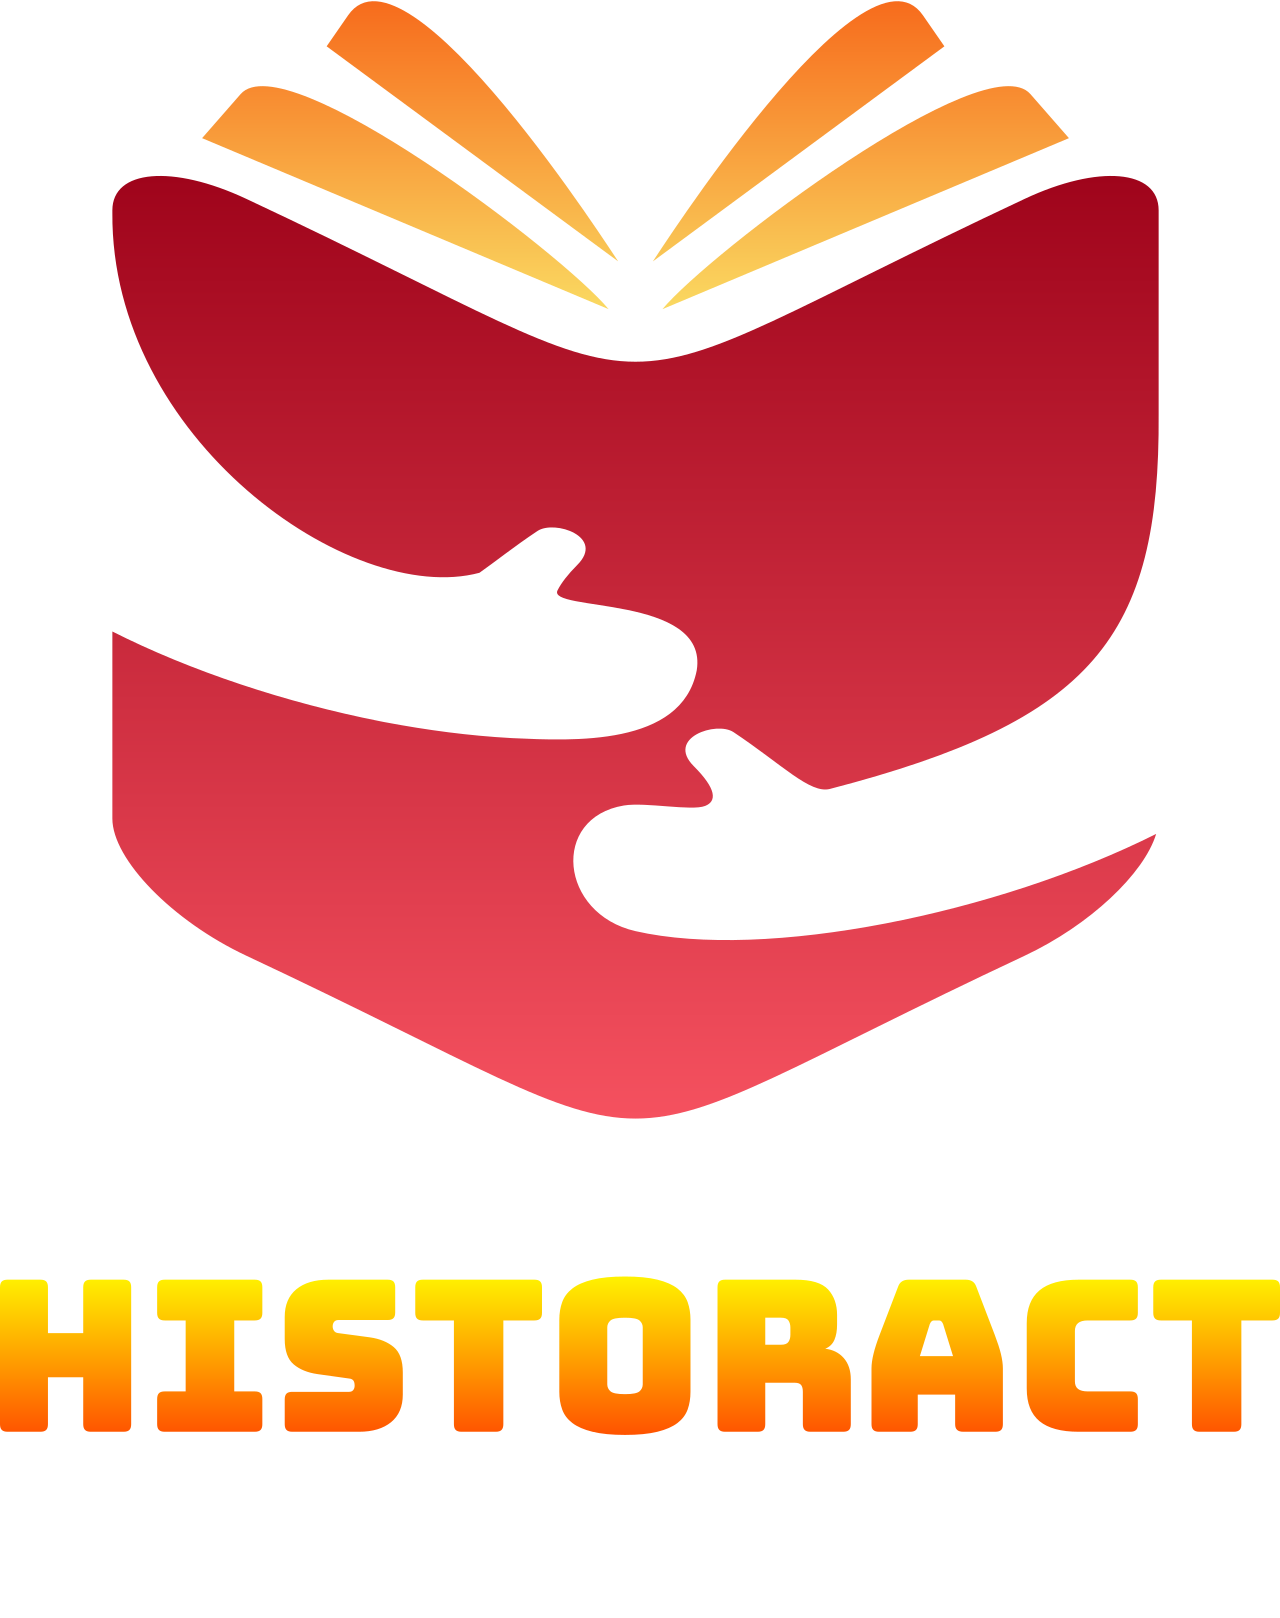 HISTORACT